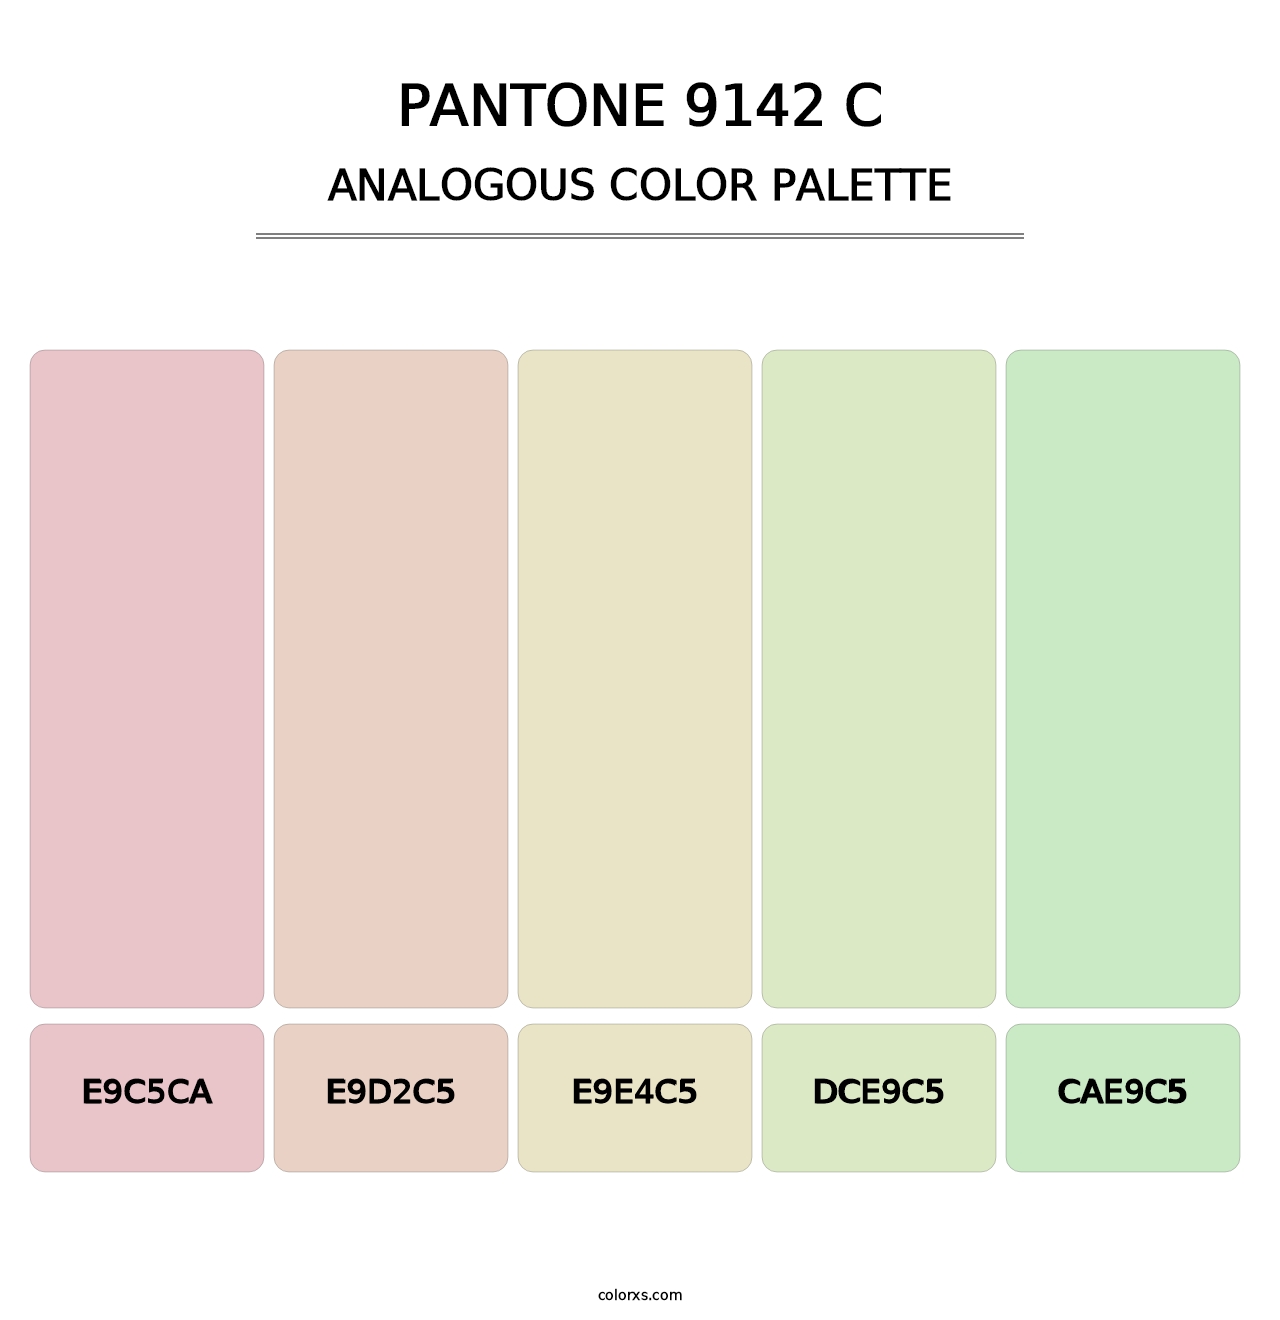 PANTONE 9142 C - Analogous Color Palette